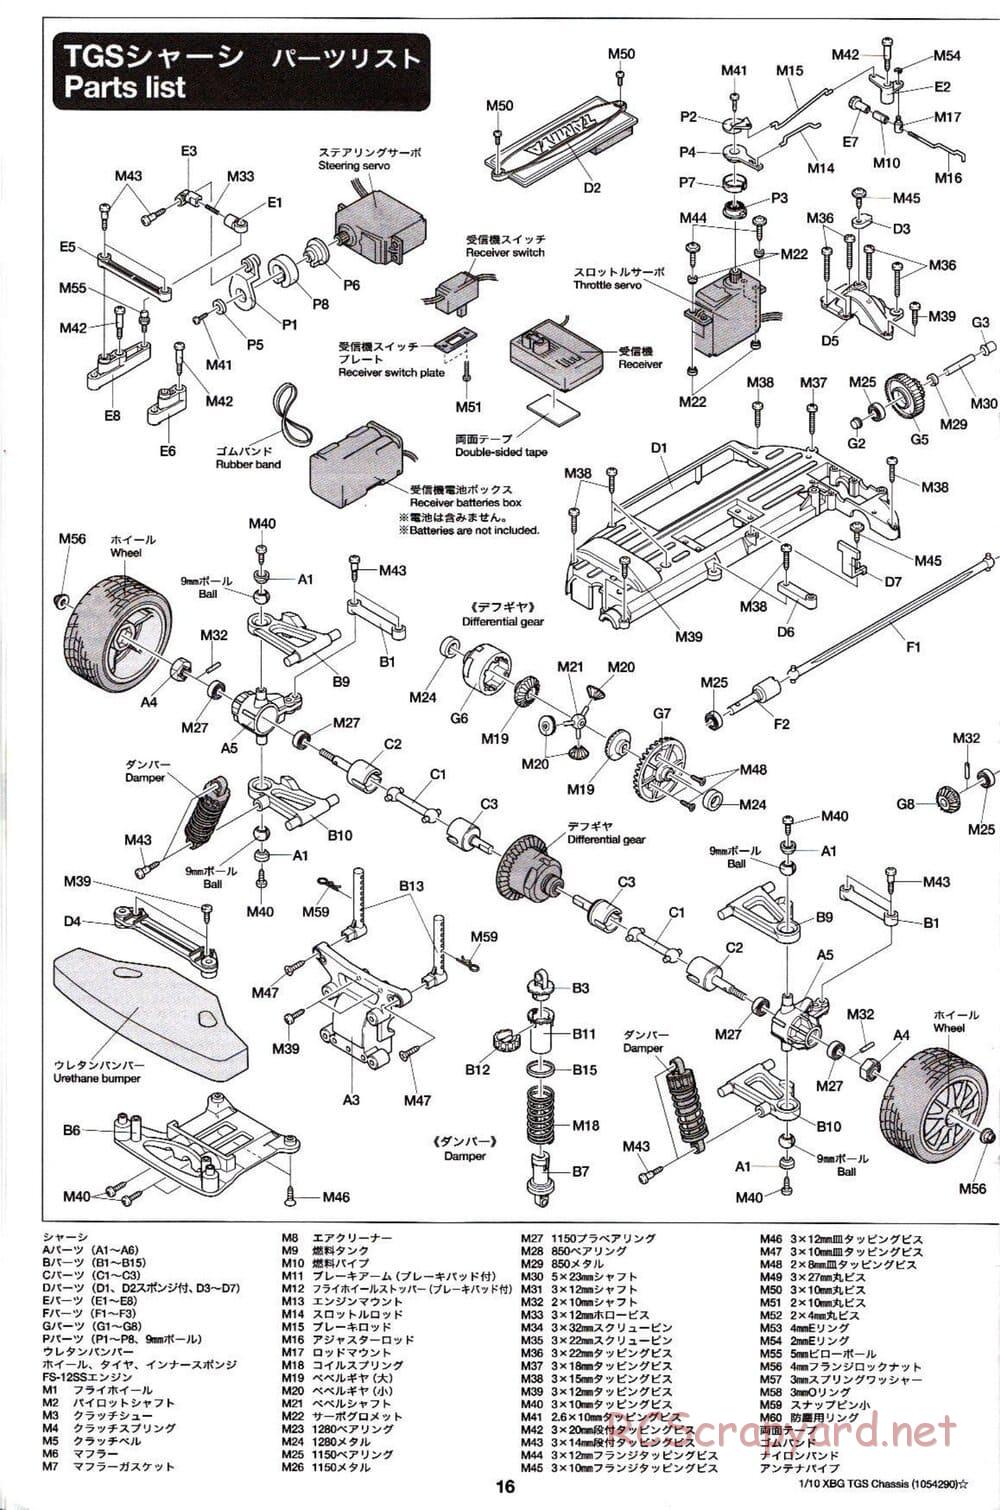 Tamiya - TGS Chassis - Manual - Page 16